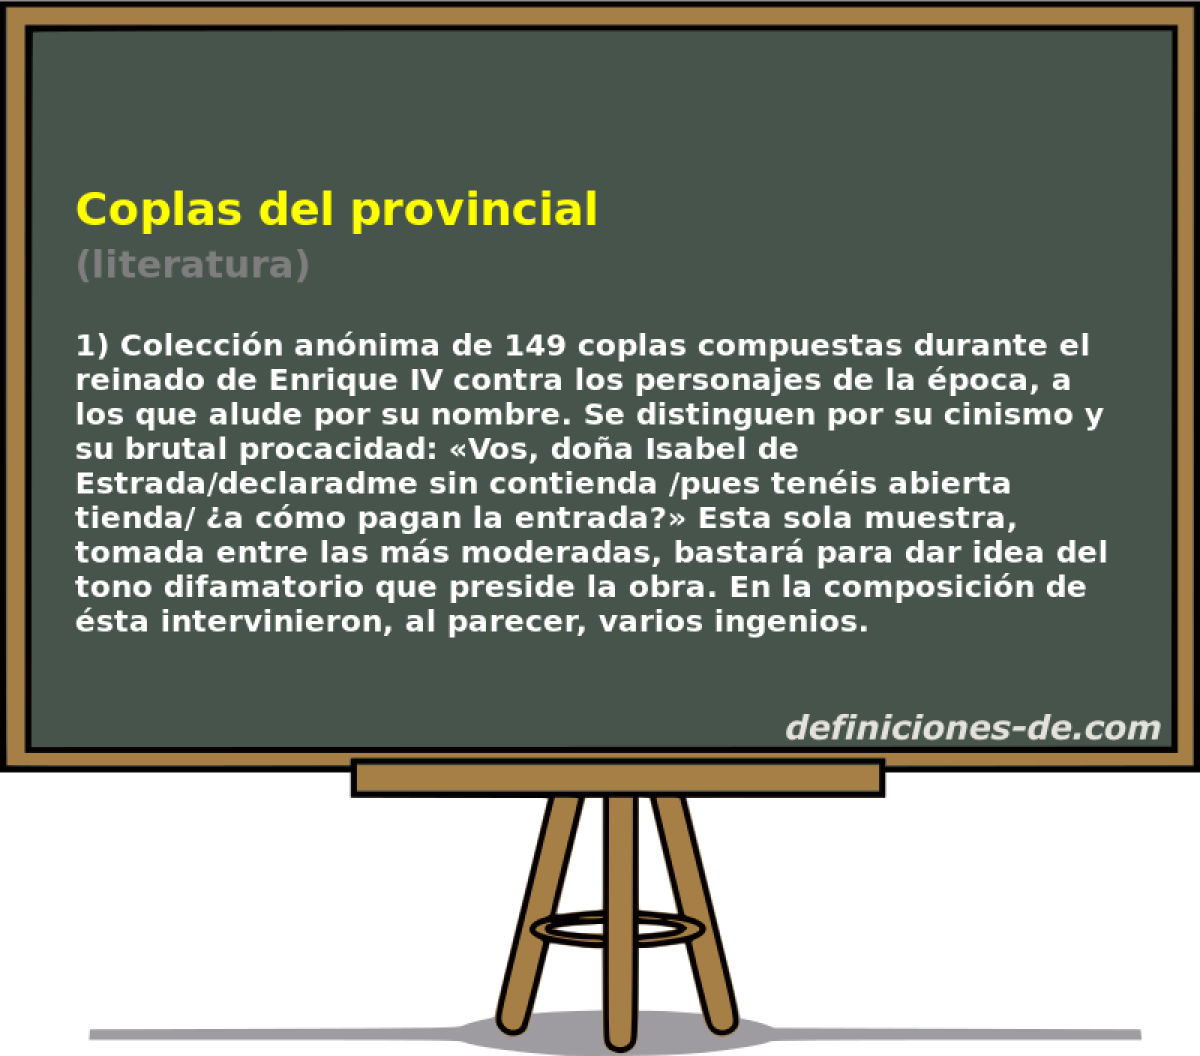 Coplas del provincial (literatura)